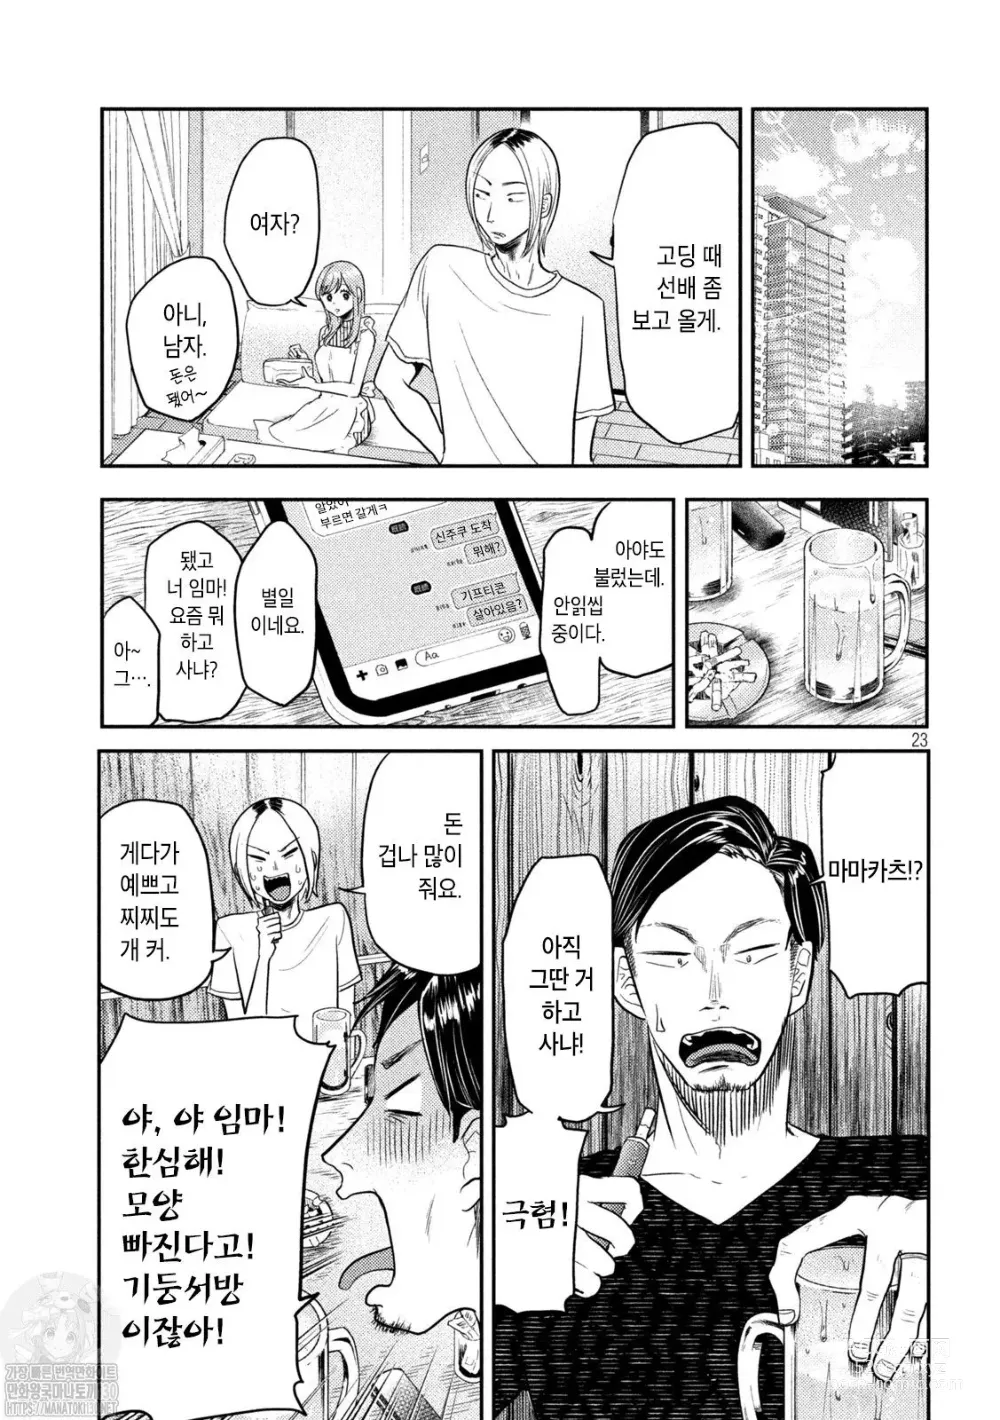 Page 23 of manga Haha wa Tsuyoi.